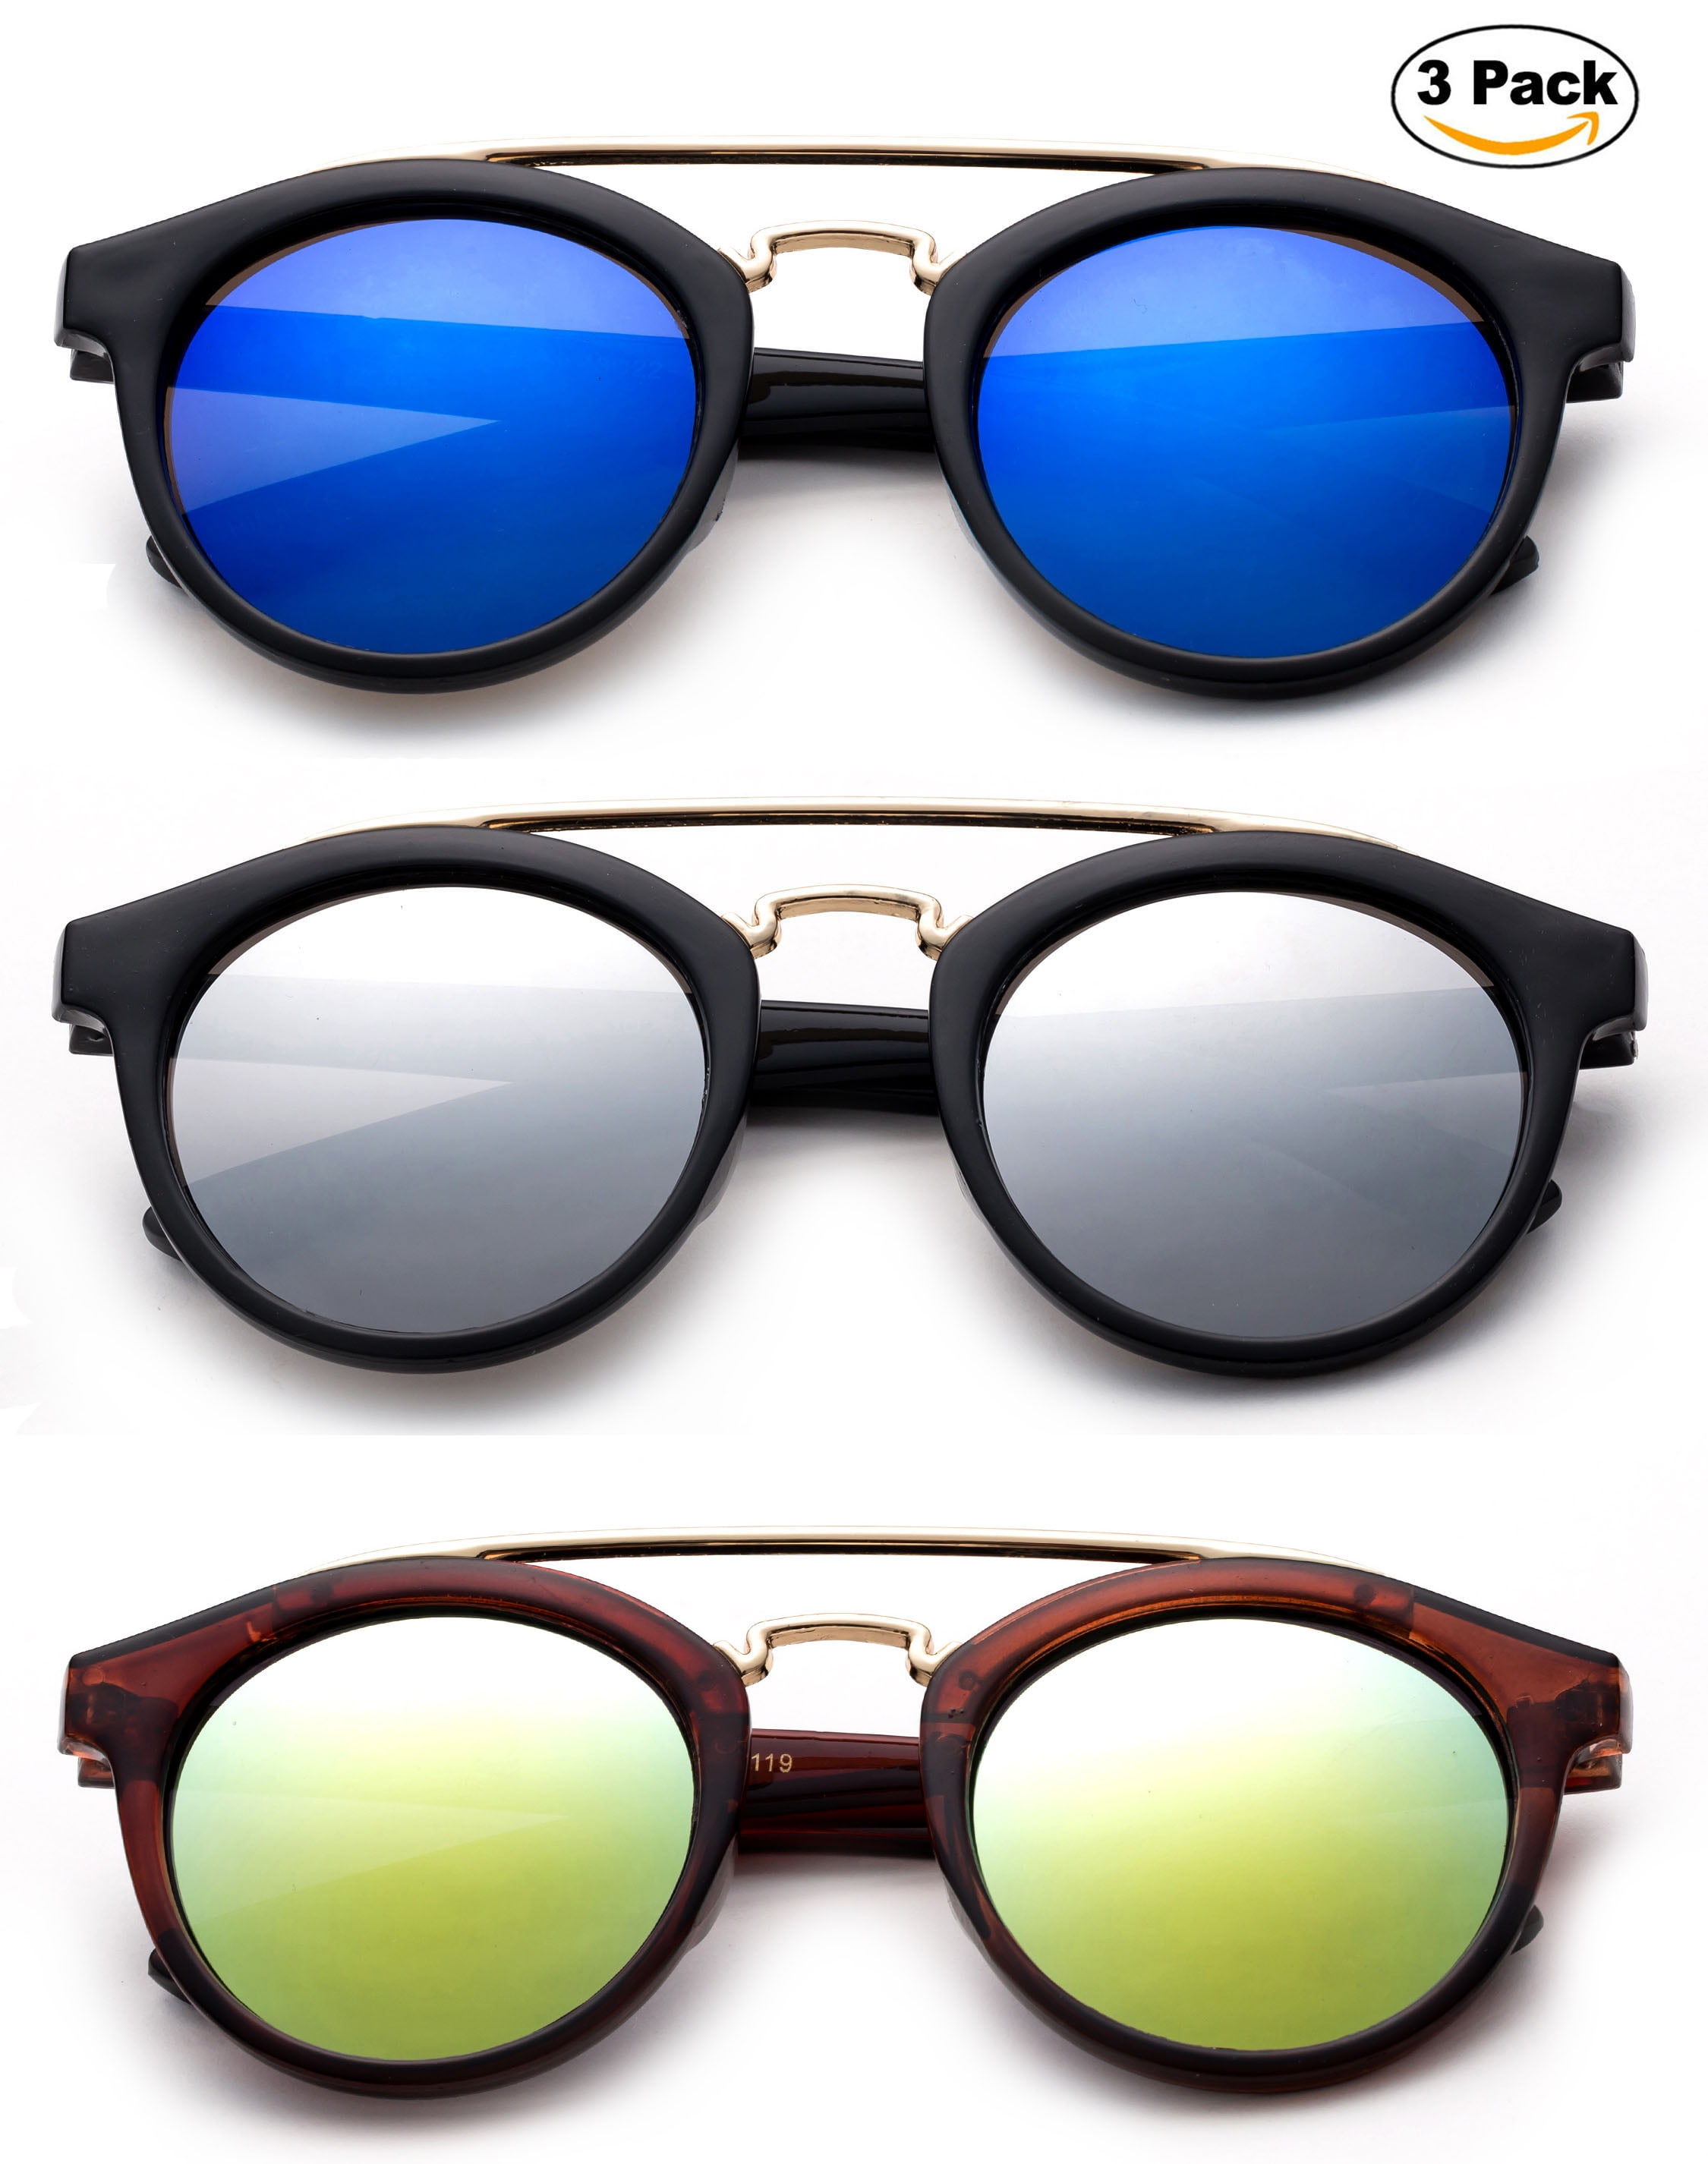 Cute Kids Sunglasses Fashion Retro Classic Flash Mirror Lens UV 100%  Lead Free 